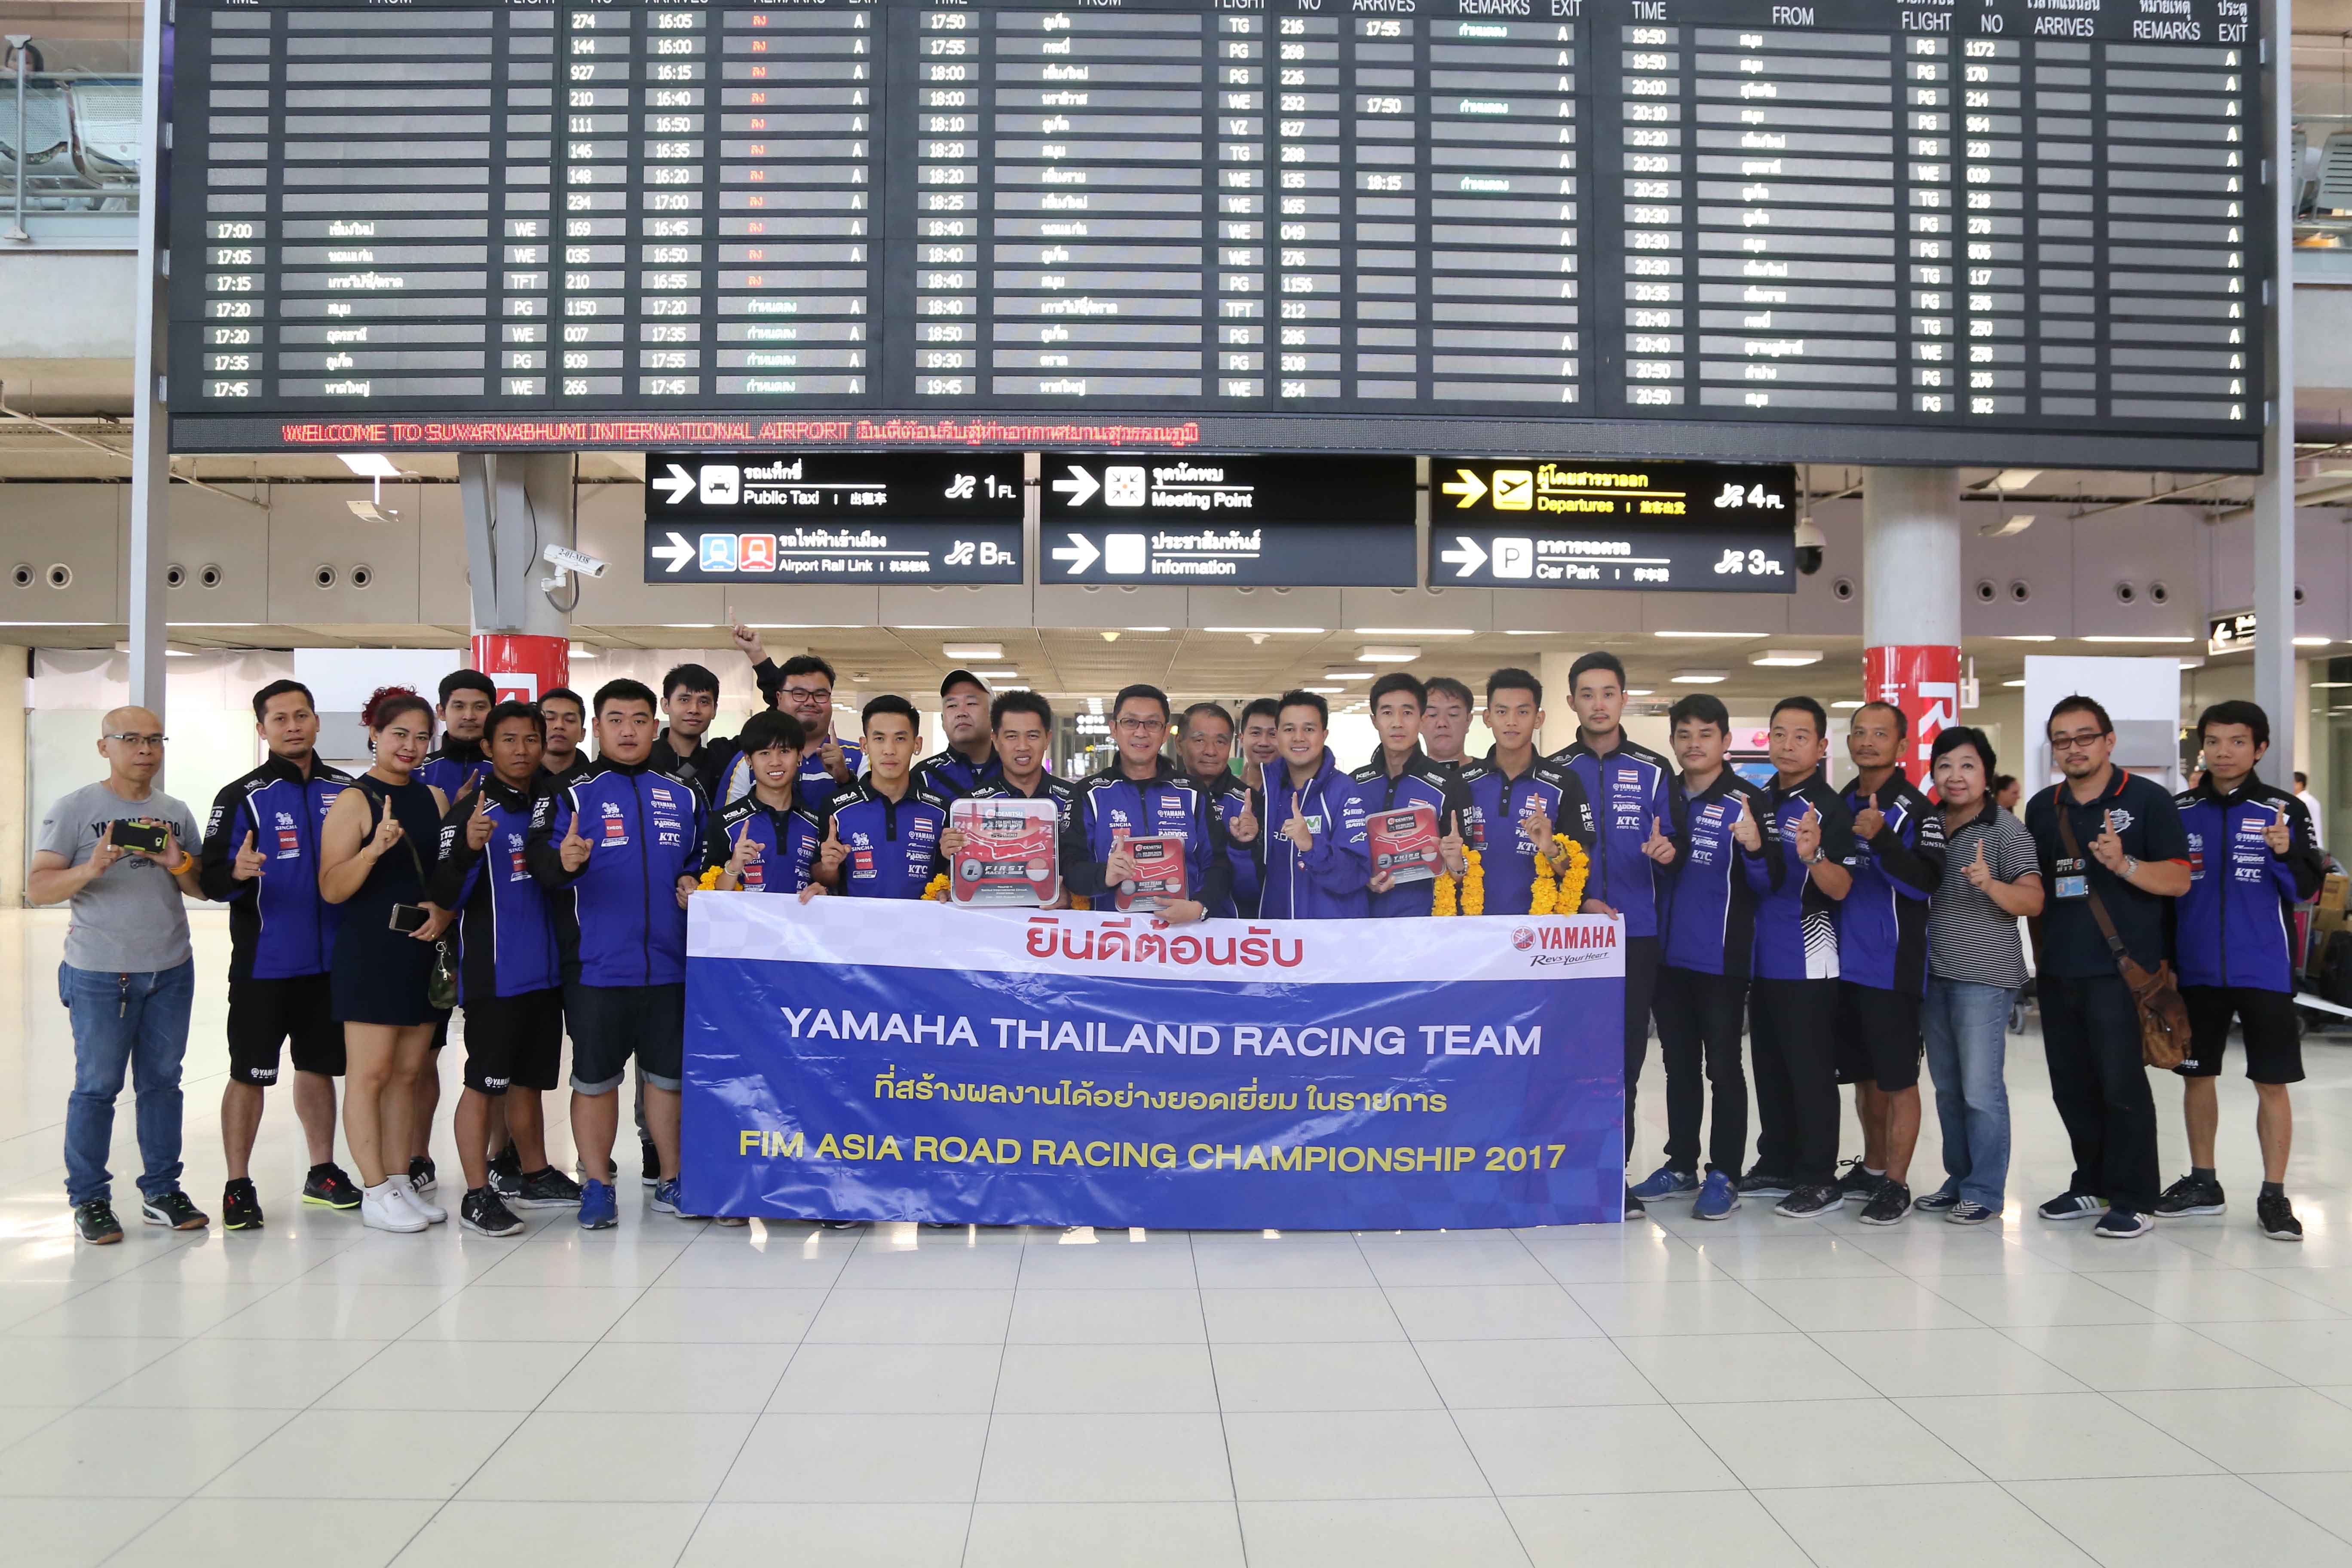 14 ยามาฮ่าต้อนรับฮีโร่นักบิดไทย หลังคว้าชัยแบบดับเบิ้ลโพเดี้ยม ศึกชิงแชมป์เอเชียที่อินโดนีเซีย